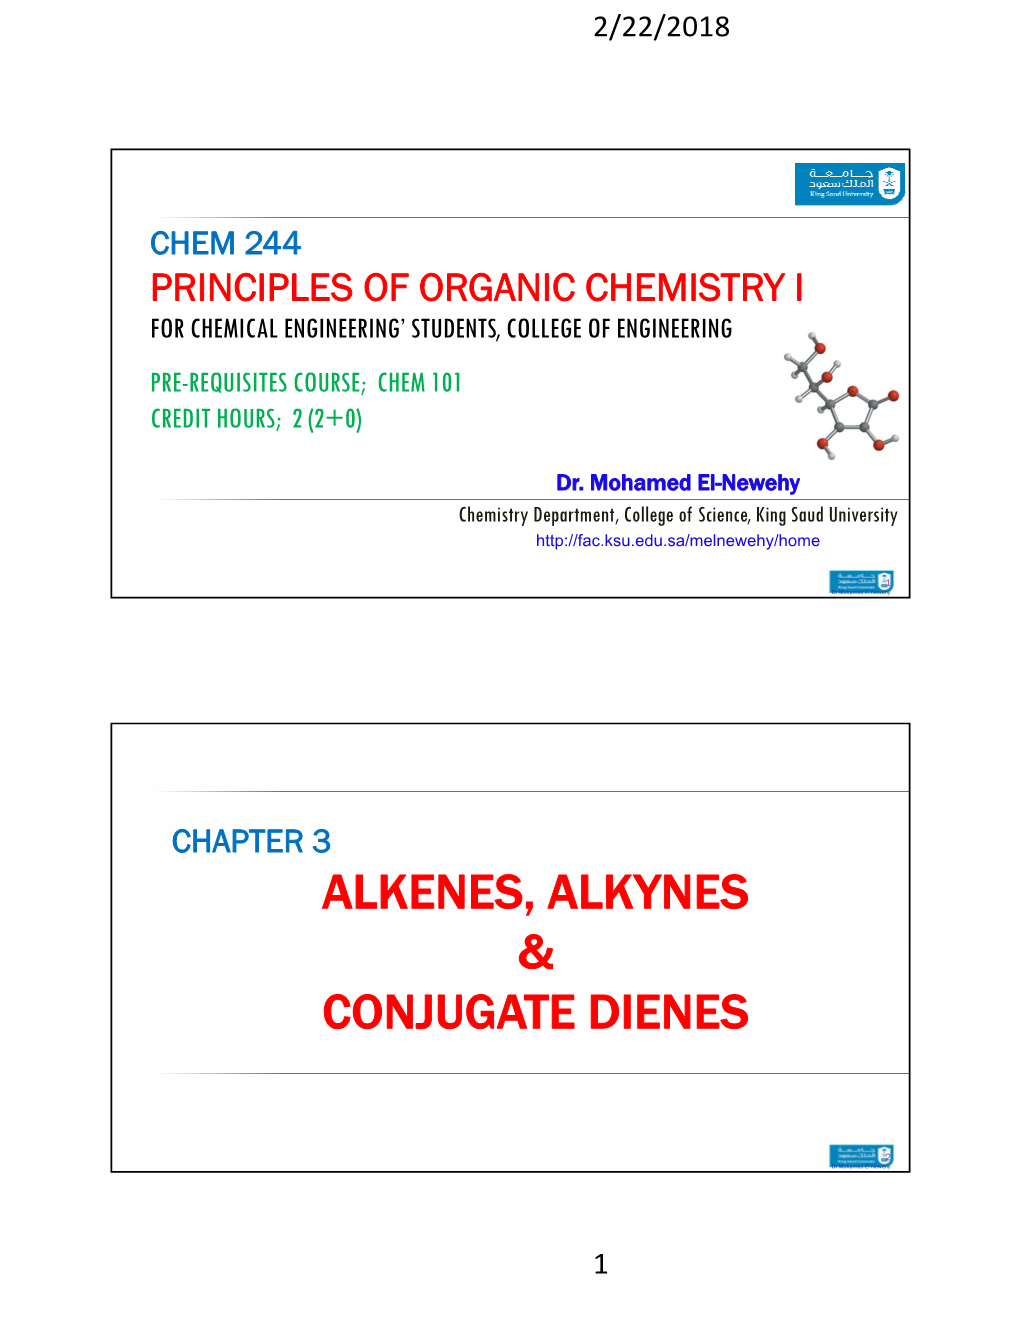 Alkenes, Alkynes & Conjugate Dienes